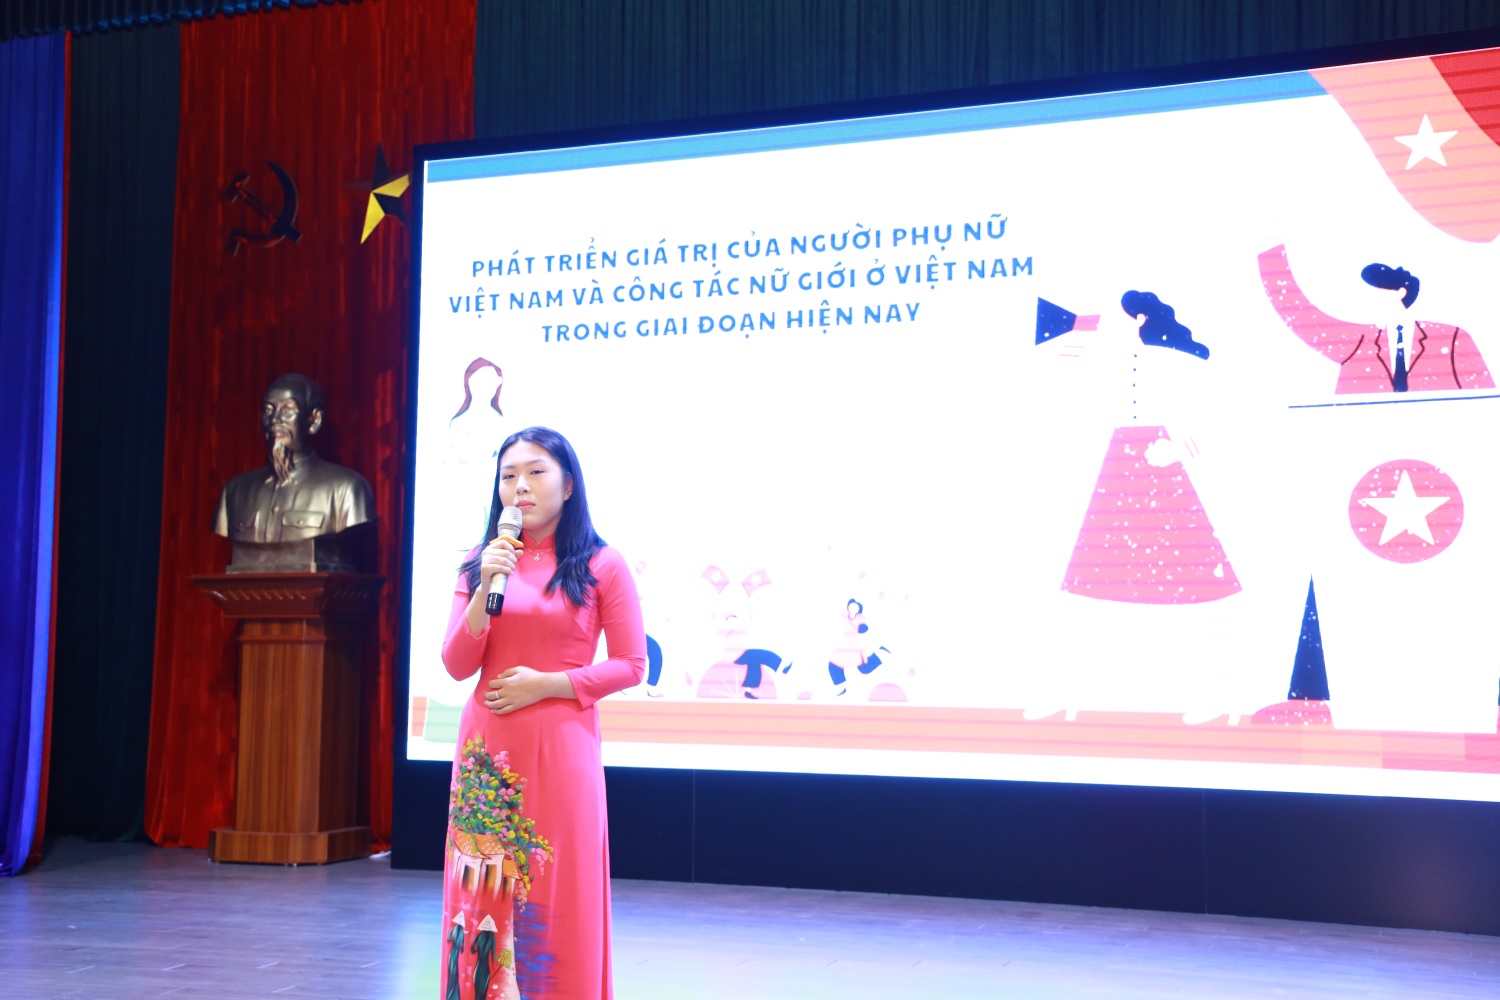 Sinh viên Lê Khánh Huyền, lớp Xây dựng Đảng 22B tự hào khi được nói về chủ đề “Phát triển giá trị của người Phụ nữ Việt Nam và công tác nữ giới ở Việt Nam trong giai đoạn hiện nay” trong phần thi hùng biện tại Chương trình.